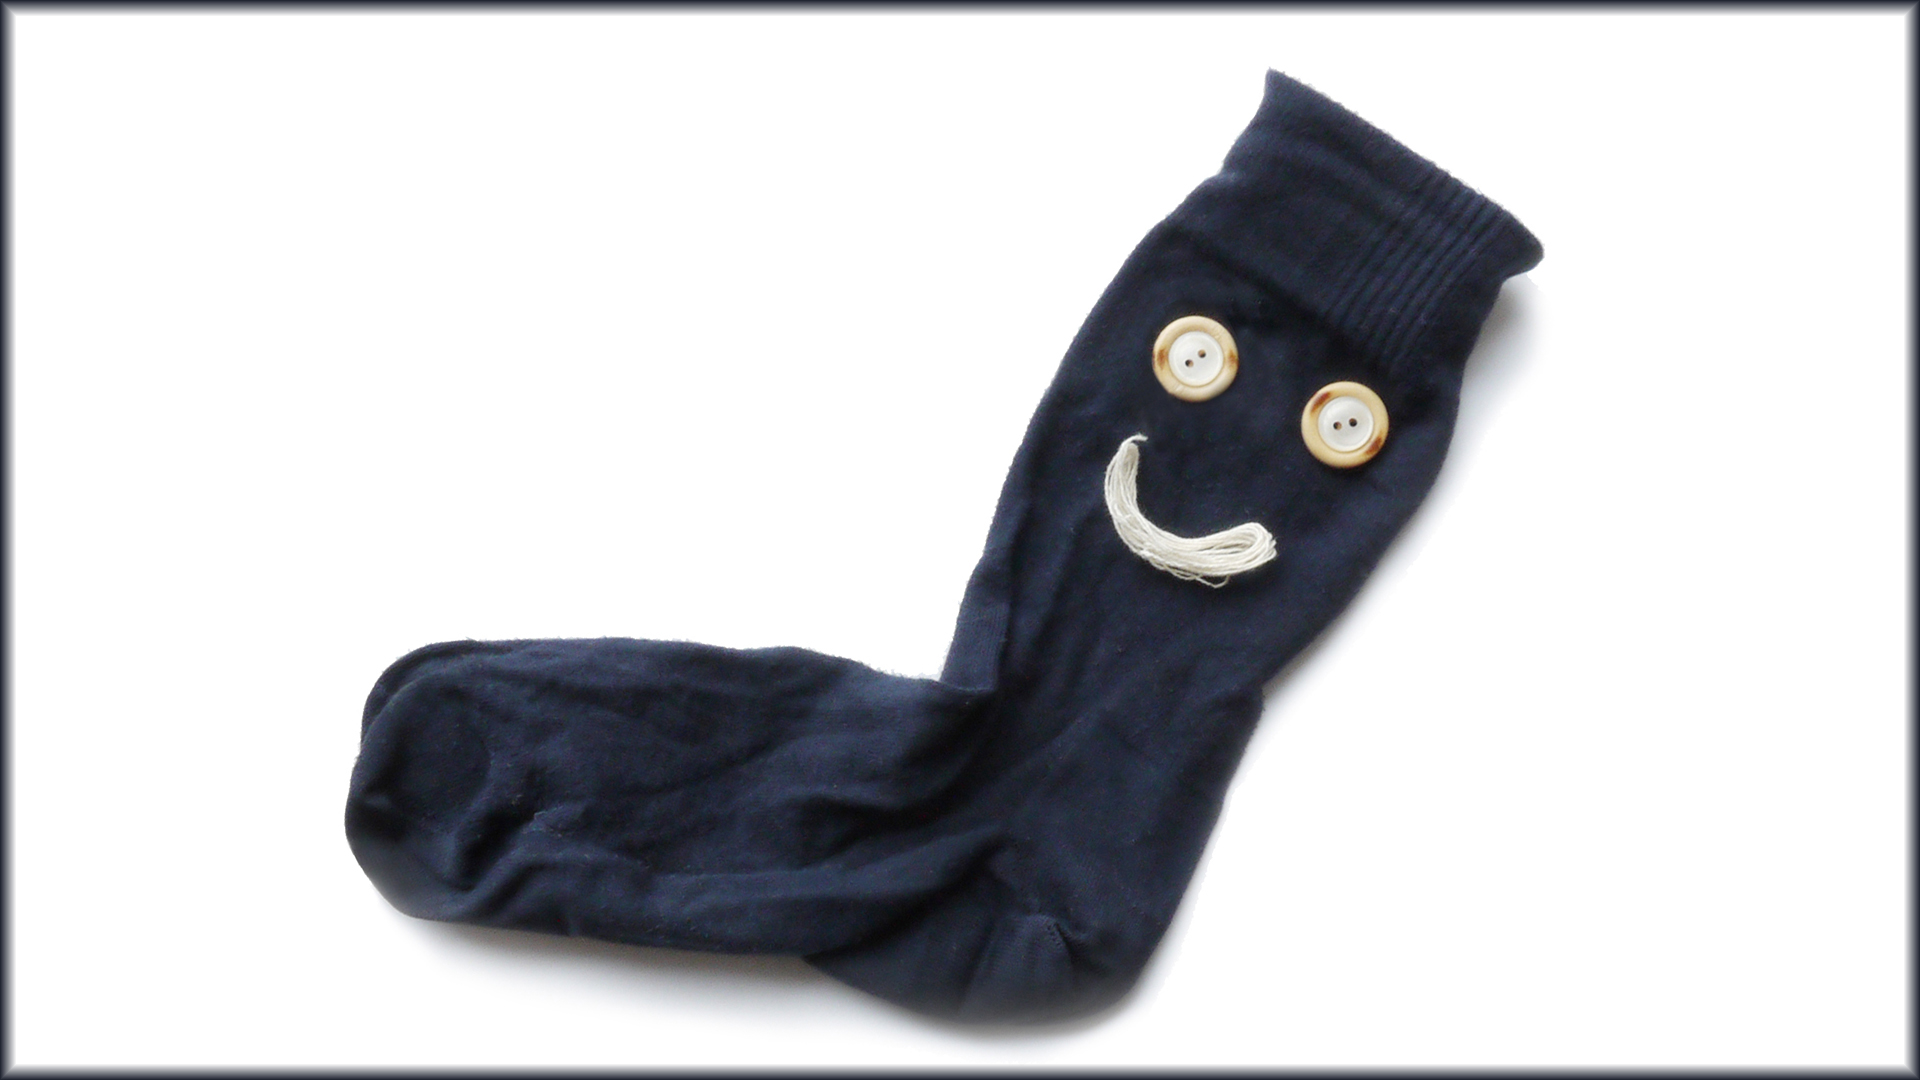 Socke, die ein lächelndes Gesicht unterhalb des Sockenbunds hat 